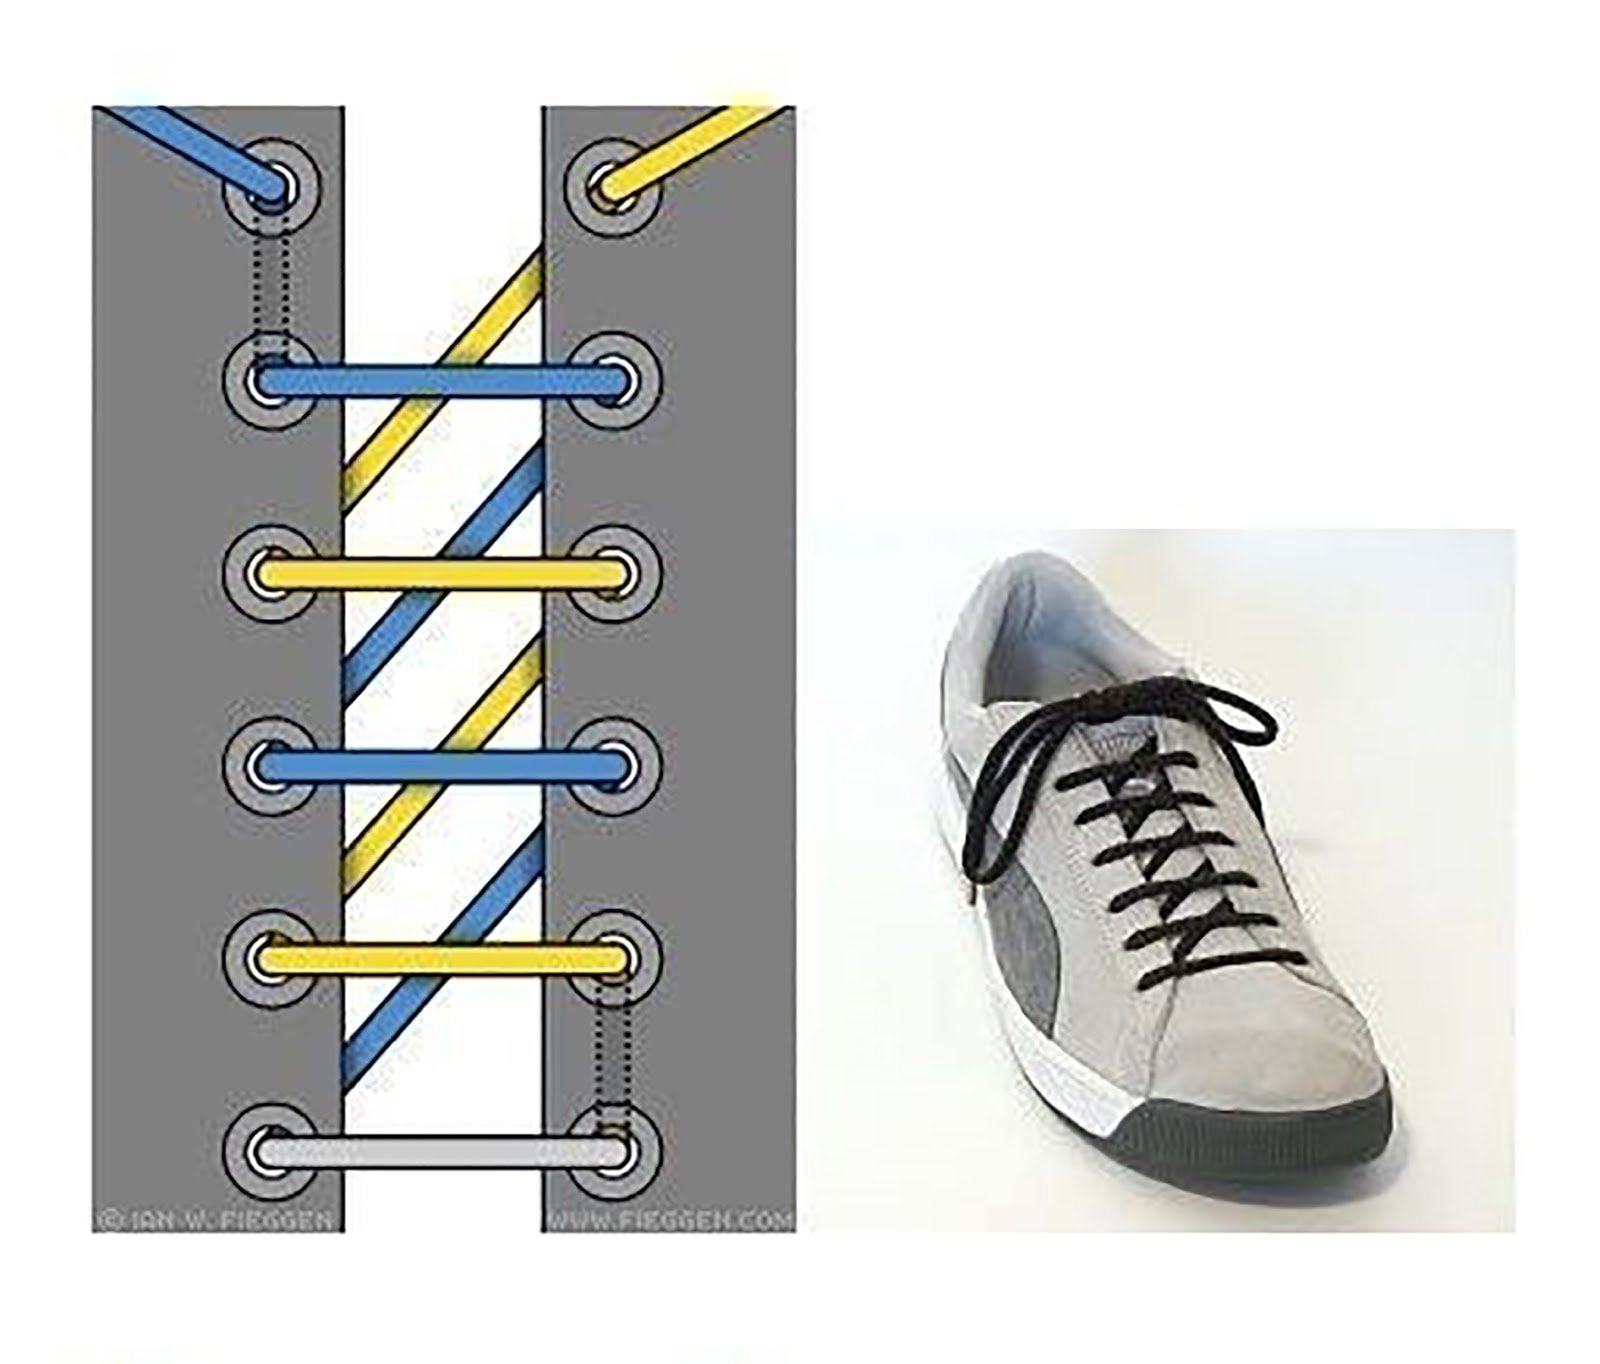 Лучшие шнуровки. Типы шнурования шнурков на 5 дырок. Шнурки зашнуровать 6 дырок. Способы завязывания шнурков на 5 дырок. Типы шнурования шнурков на 6 отверстий.